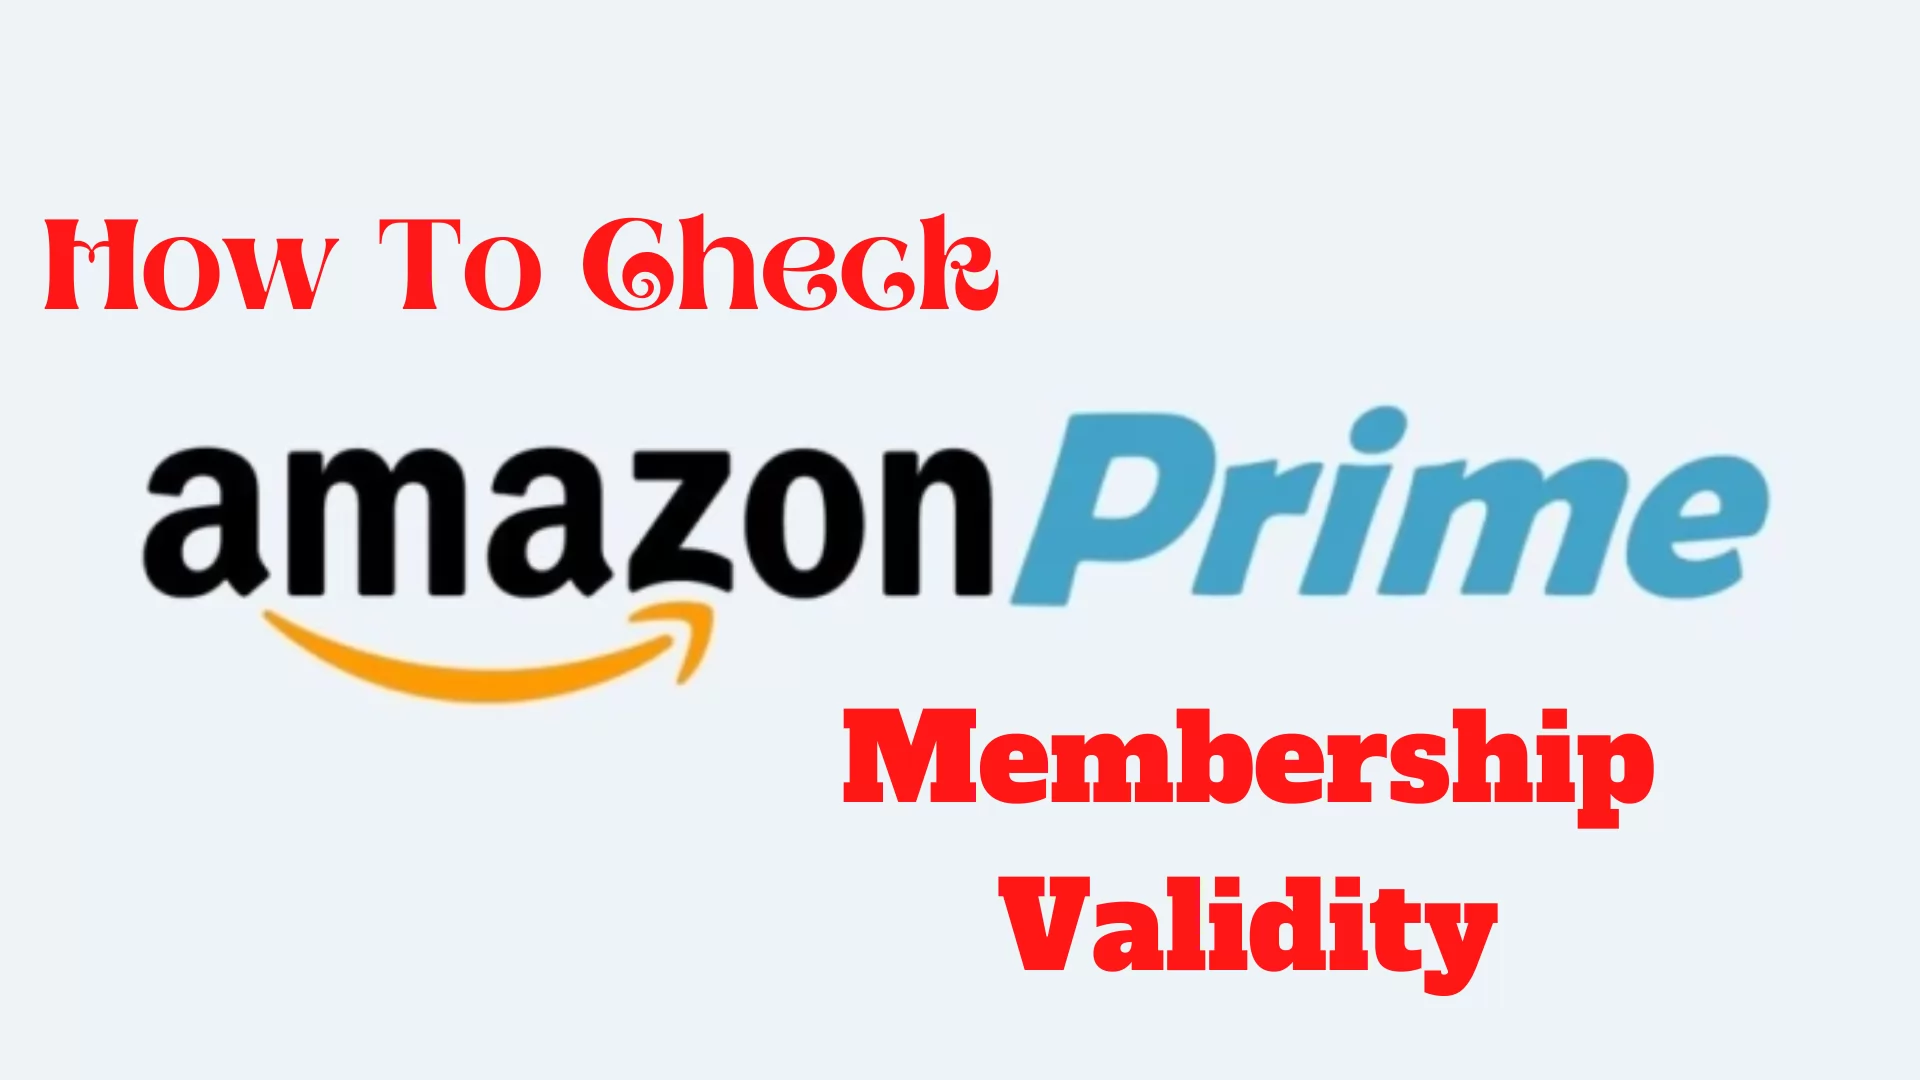 How To Check Amazon Prime Validity